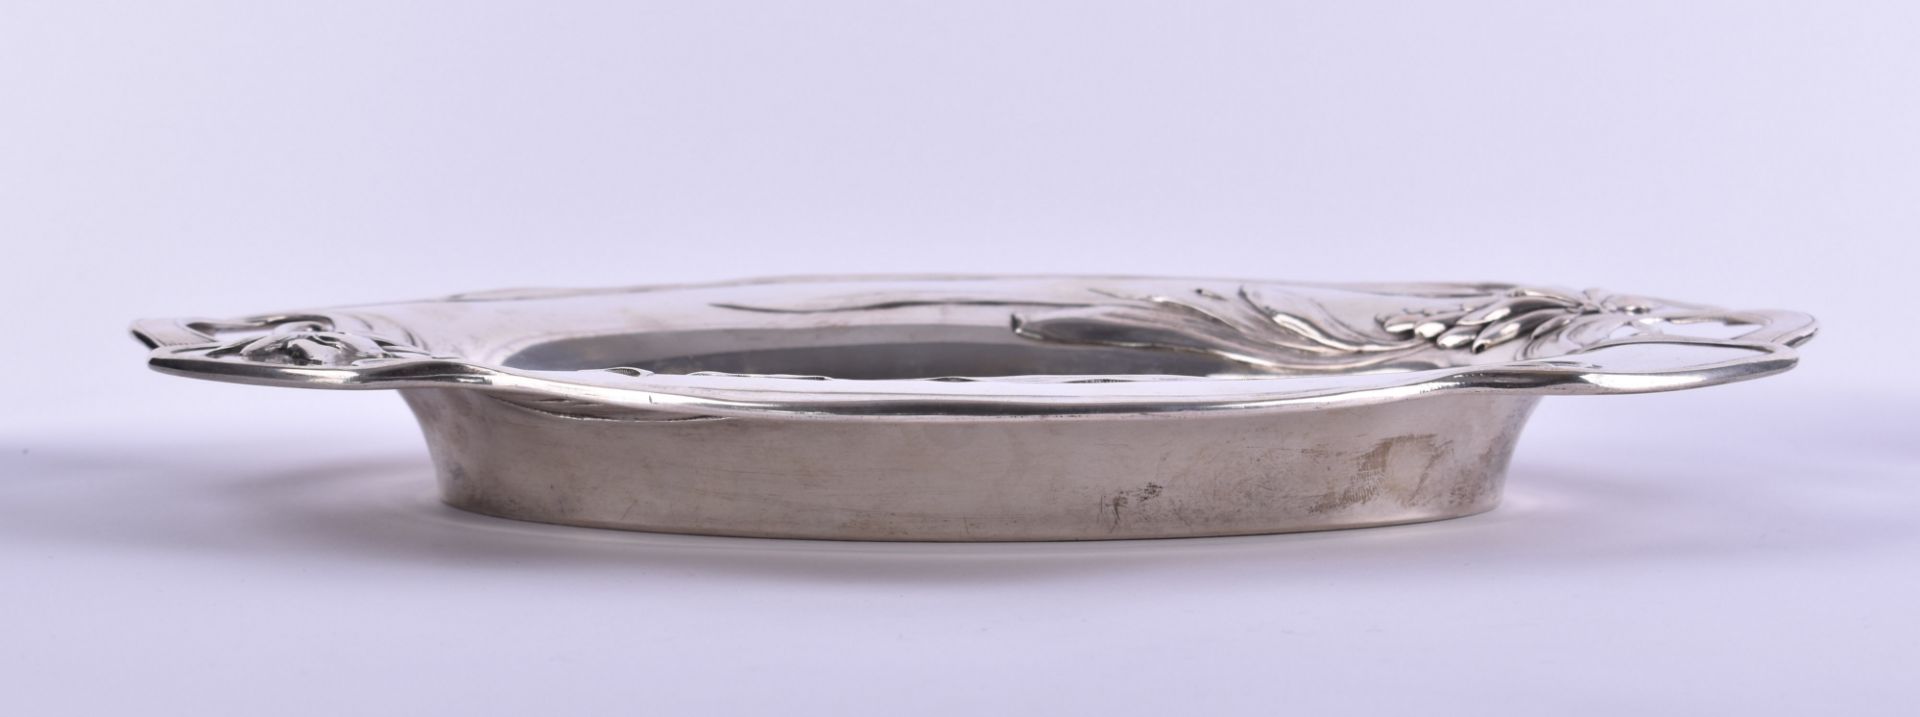  Art Nouveau silver bowl Austria - Image 4 of 6